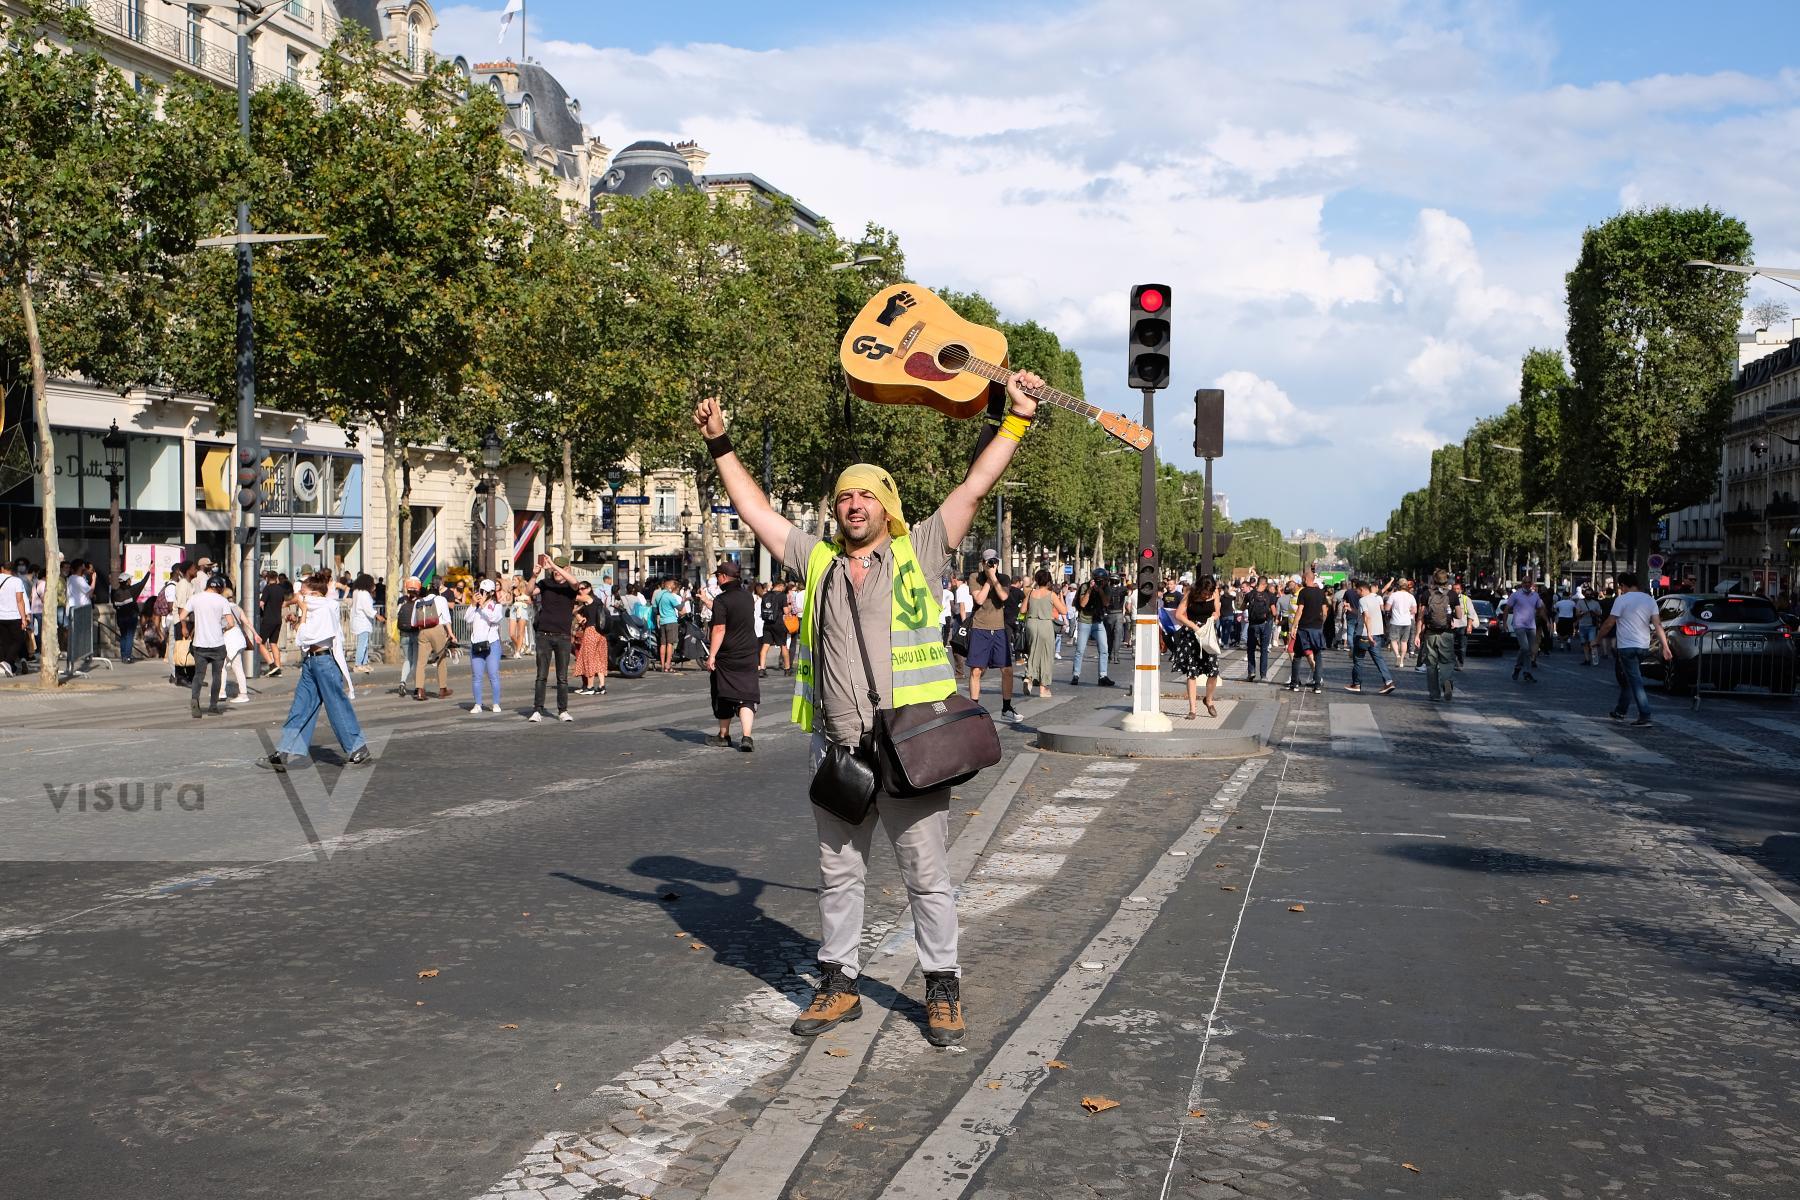 Purchase Gilets jaunes on the Champs-Élysées by Remon Haazen